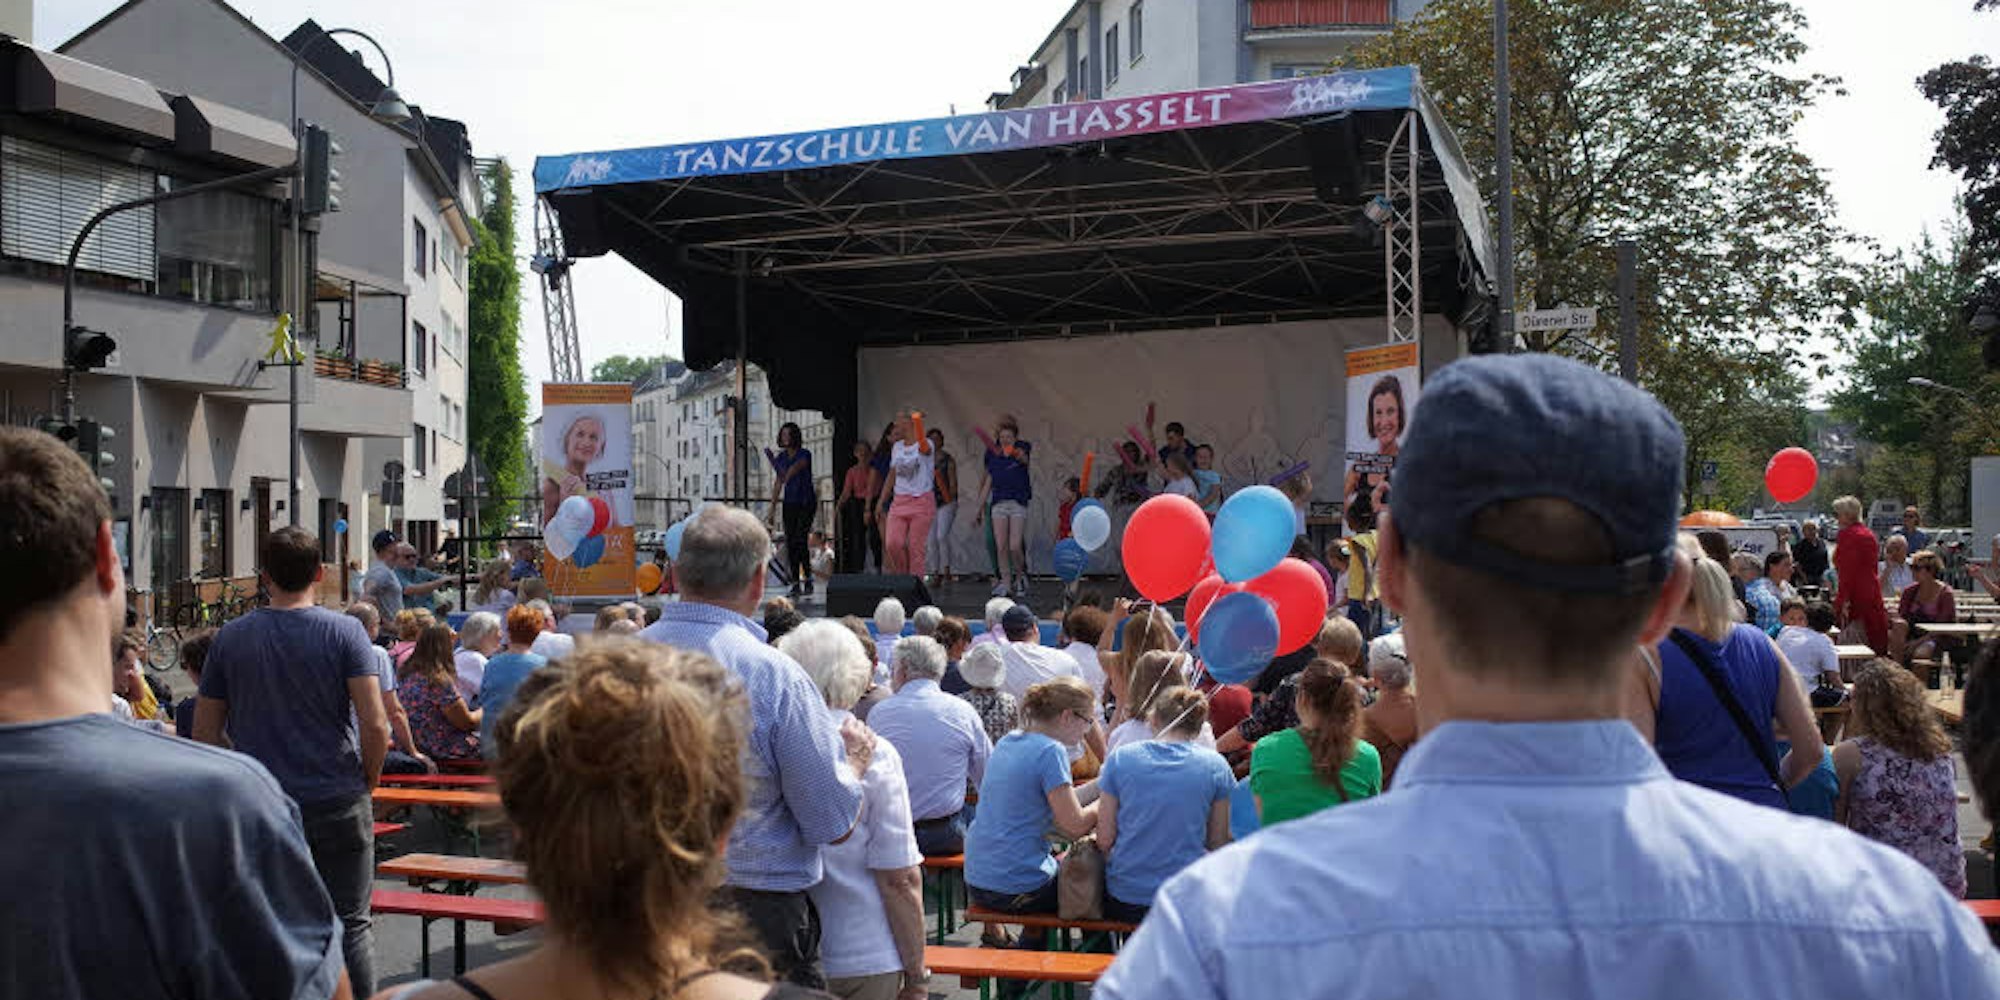 Auf der Bühne sorgten Gruppen der Tanzschule van Hasselt für Stimmung.